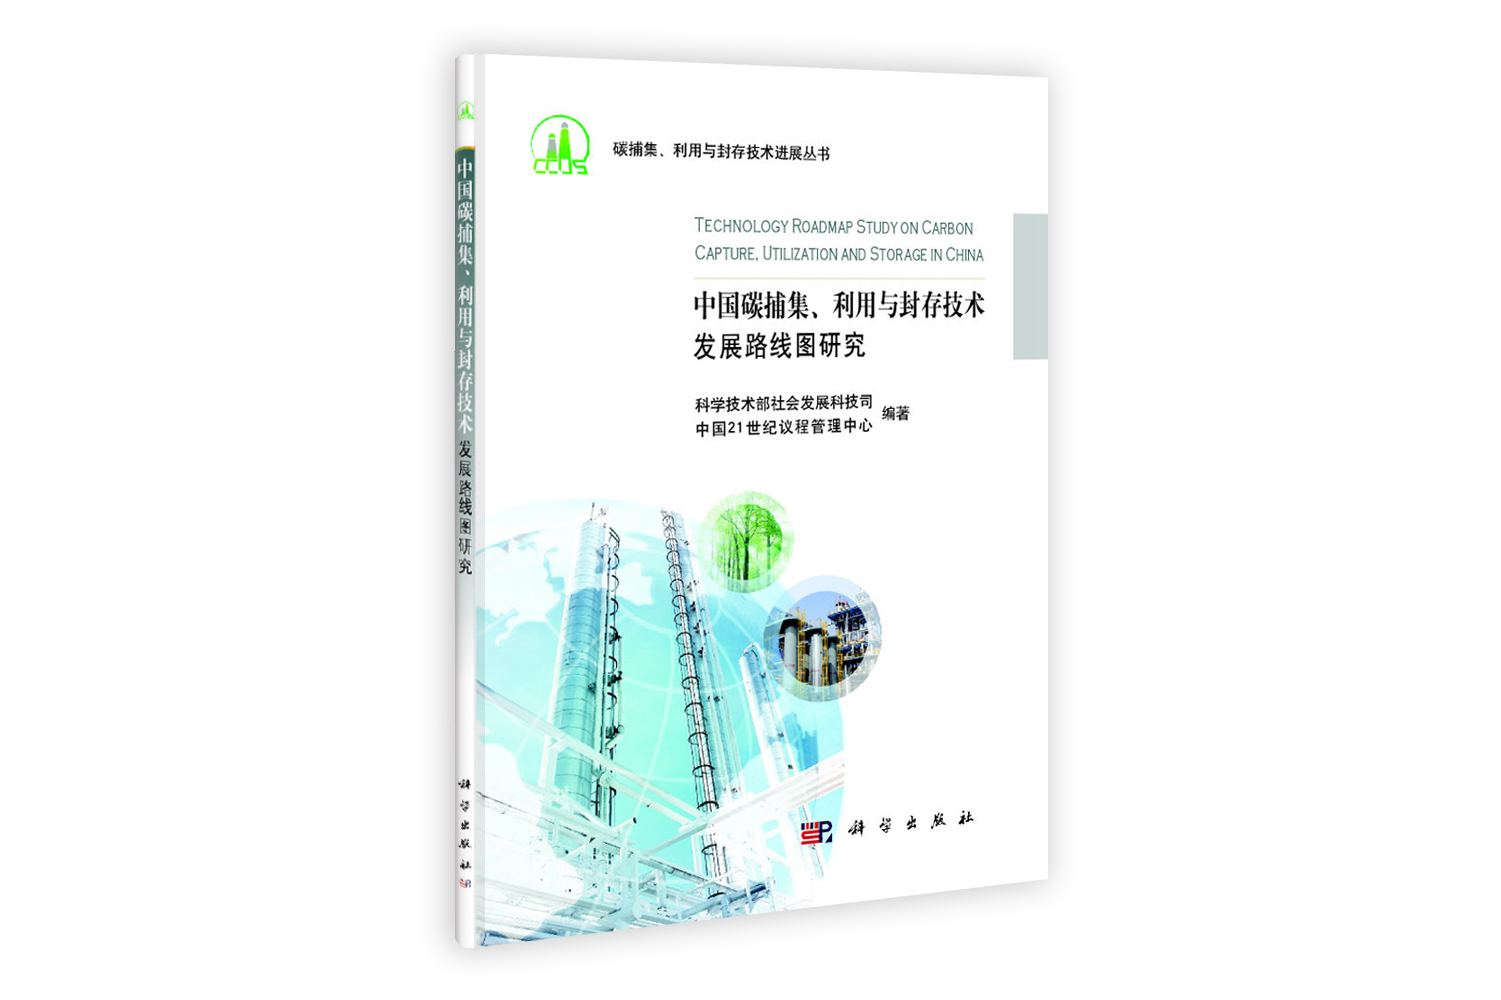 中国碳捕集利用与封存技术发展路线图研究